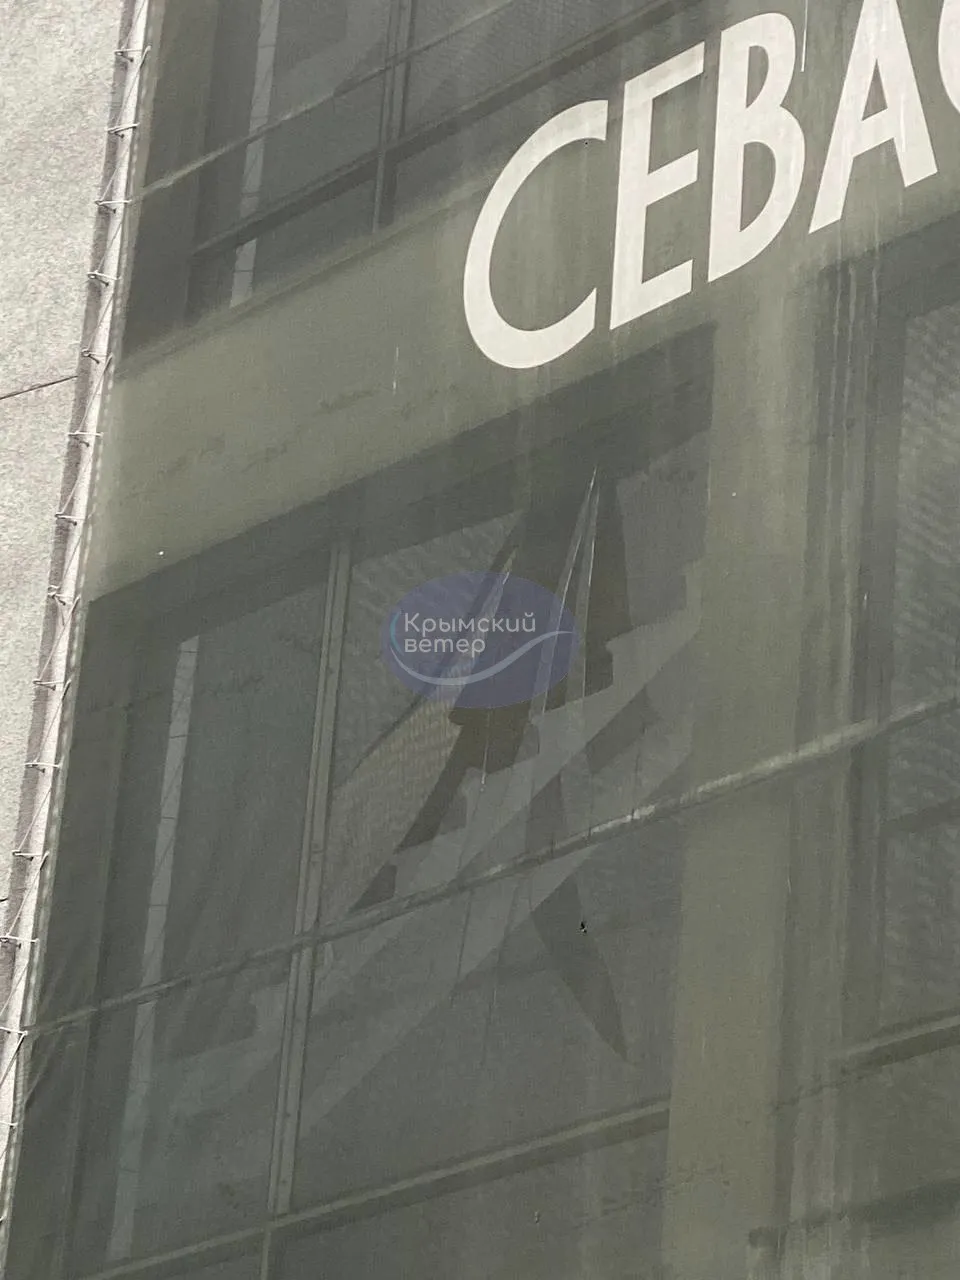 Вибухова хвиля розбила вікна у будівлі окупаційної влади Севастополя